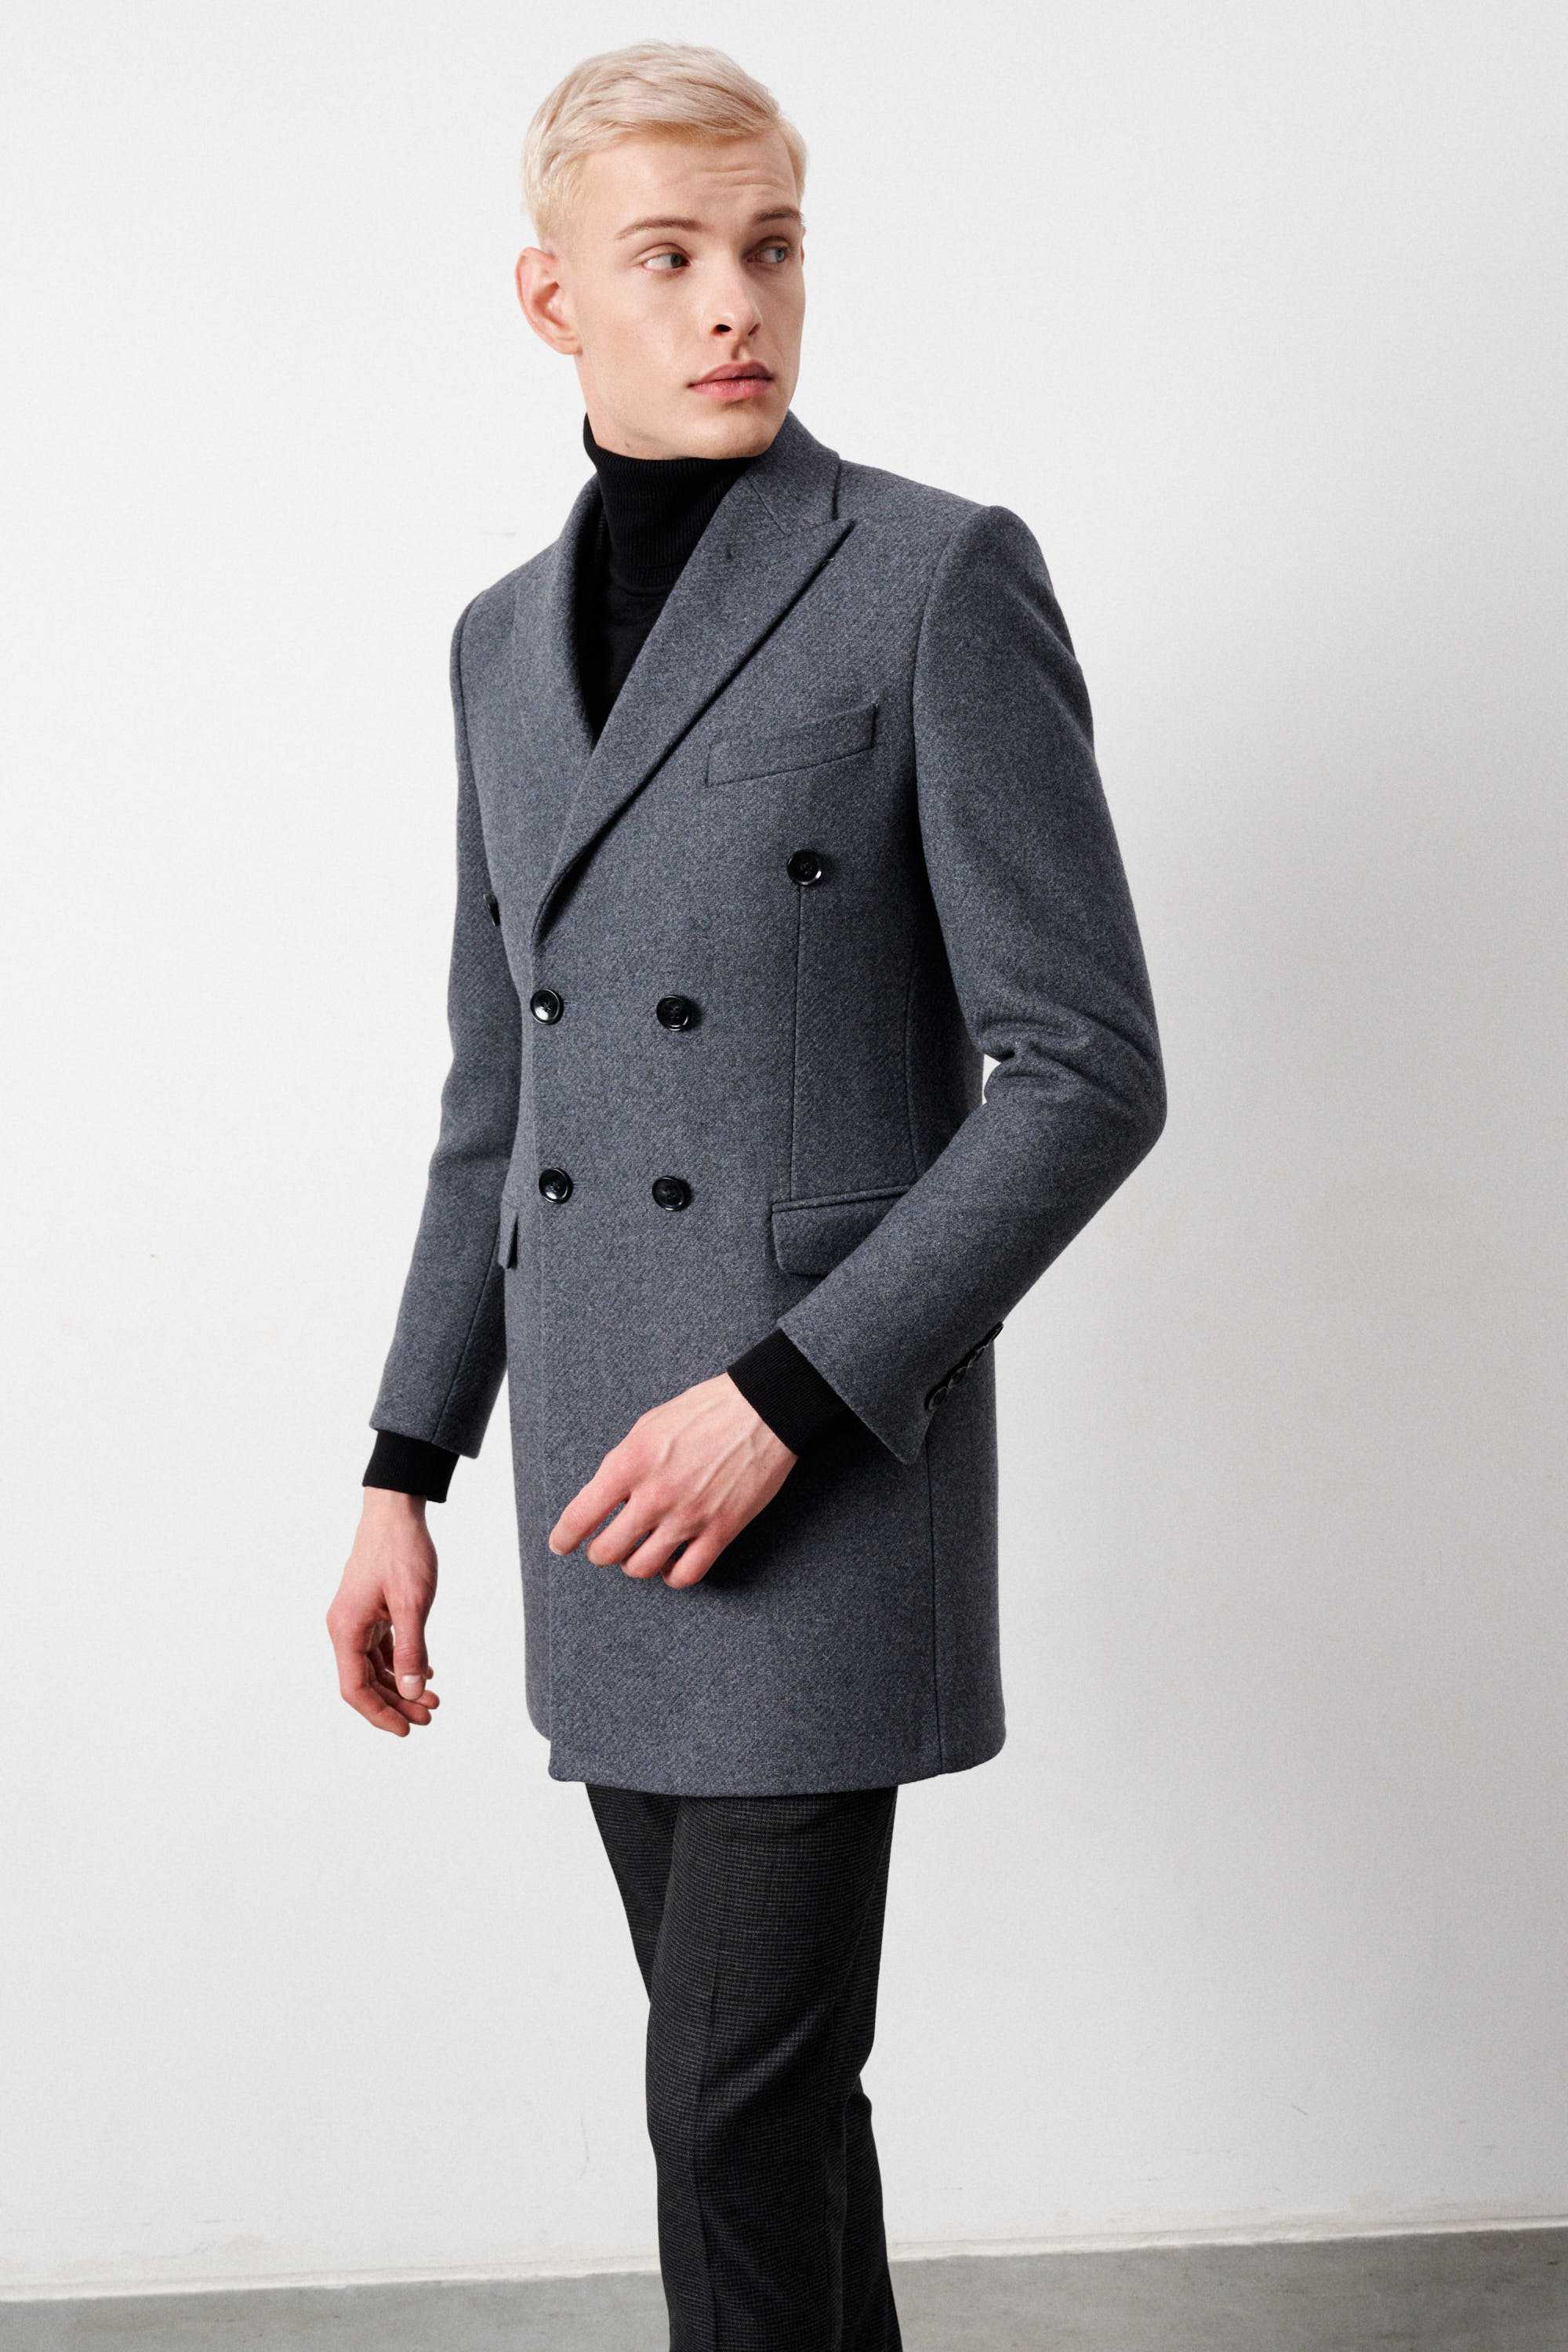 Пальто двубортное мужское, демисезонное, серое меланж, в диагональную фактуру, с итальянскими лацканами